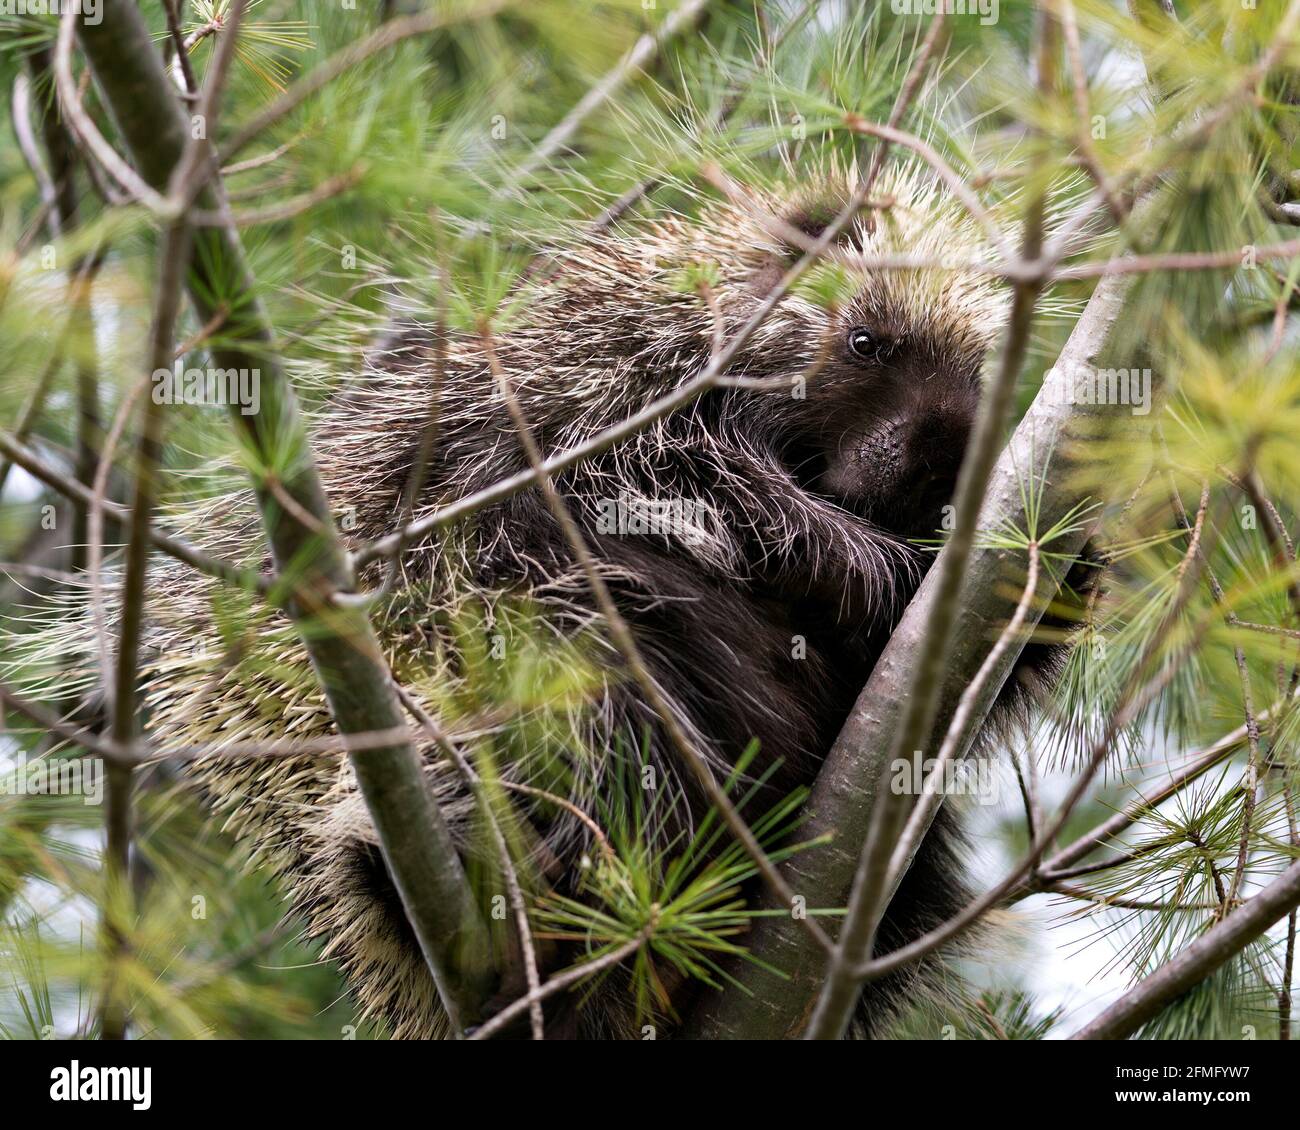 Porcupine se cachant dans un arbre, montrant son corps, sa tête, son manteau de épines acérées, des quills, au printemps avec des aiguilles de premier plan de pin et le dos Banque D'Images